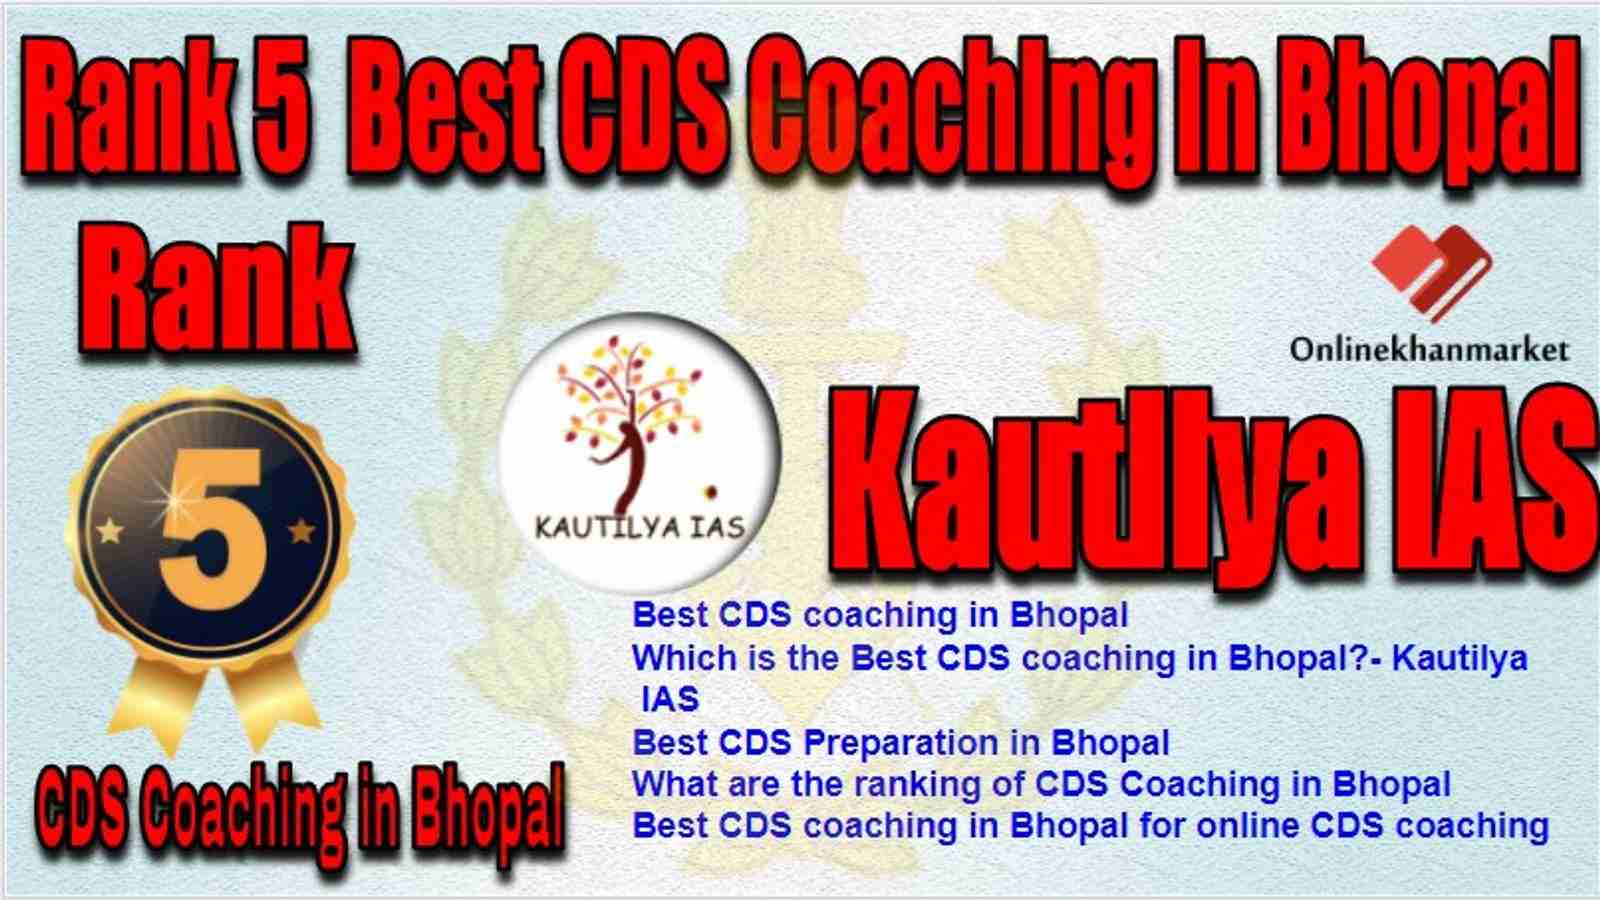 Rank 5 Best CDS Coaching in bhopal